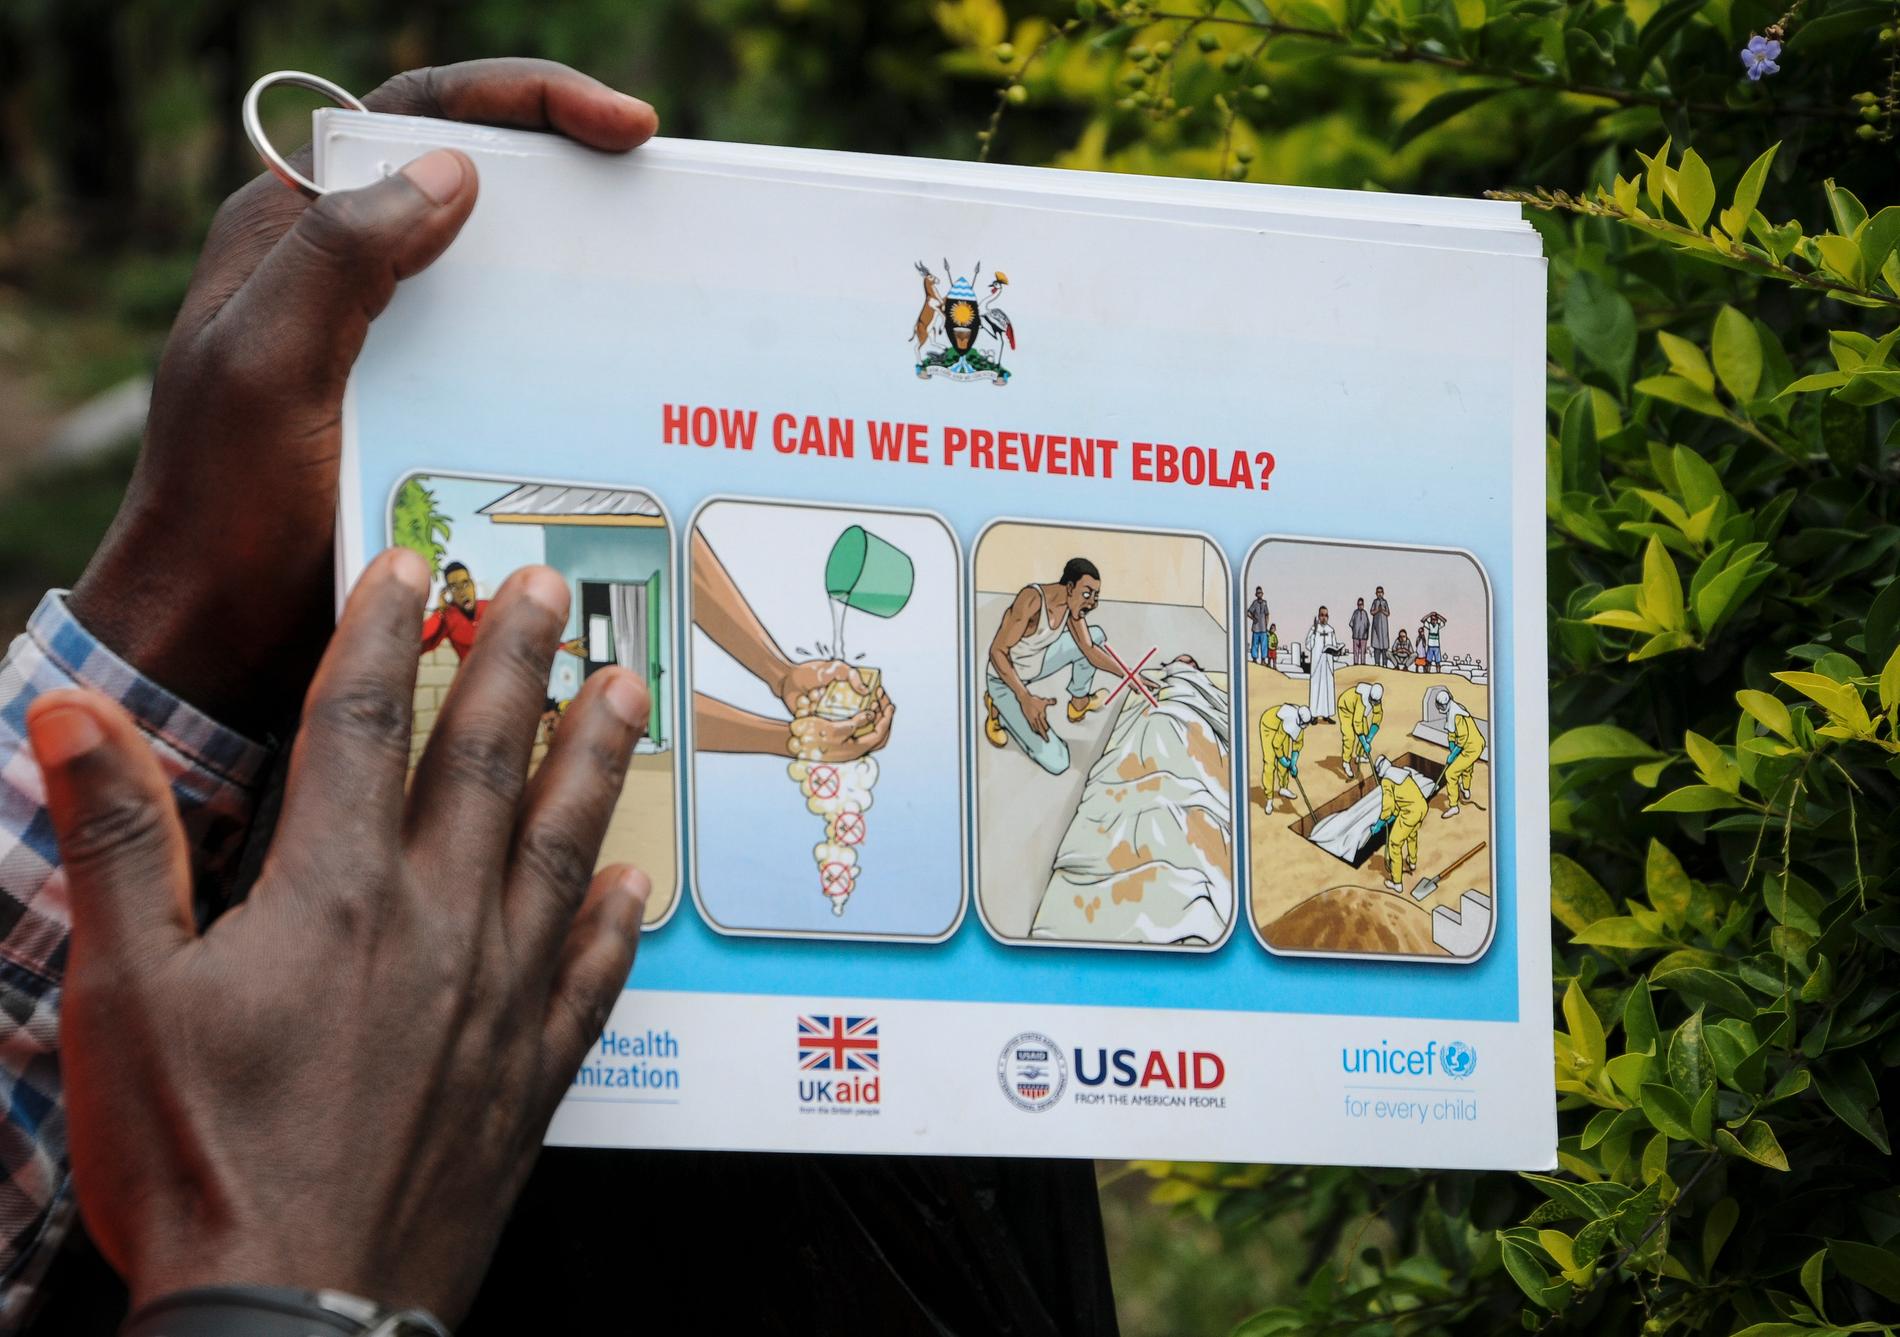 Tanzania har inte gett information om misstänkta ebolafall, meddelar WHO. Arkivbild.